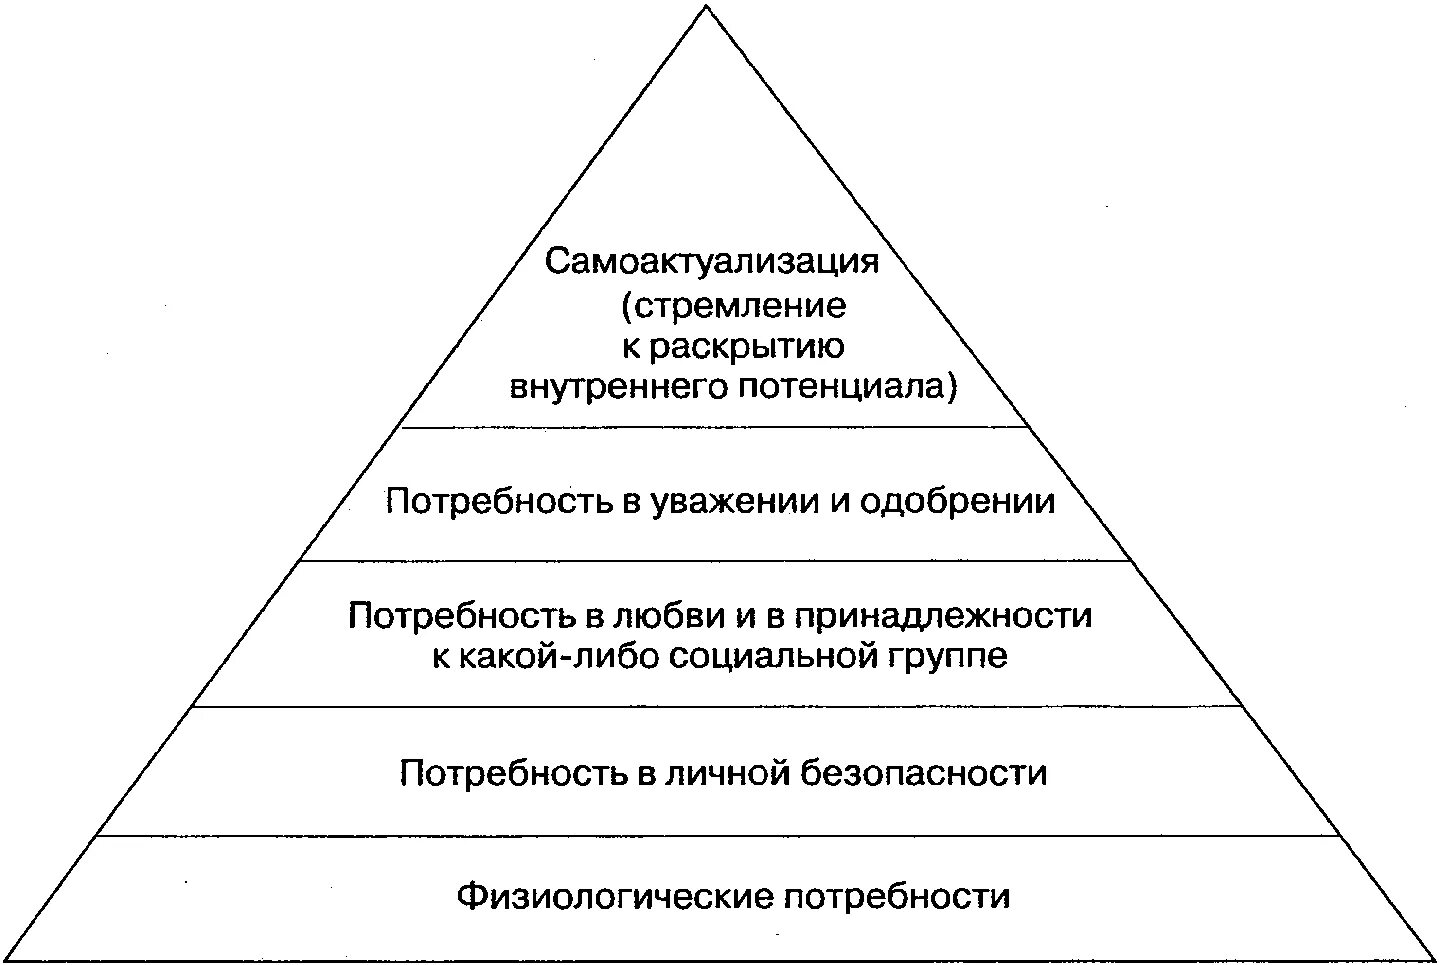 Безопасность как ценность. Абрахам Маслоу иерархия потребностей. Пирамида потребностей Абрахама Маслоу 5 ступеней. Схема потребностей Маслоу. Высшая потребность в пирамиде потребностей а. Маслоу.